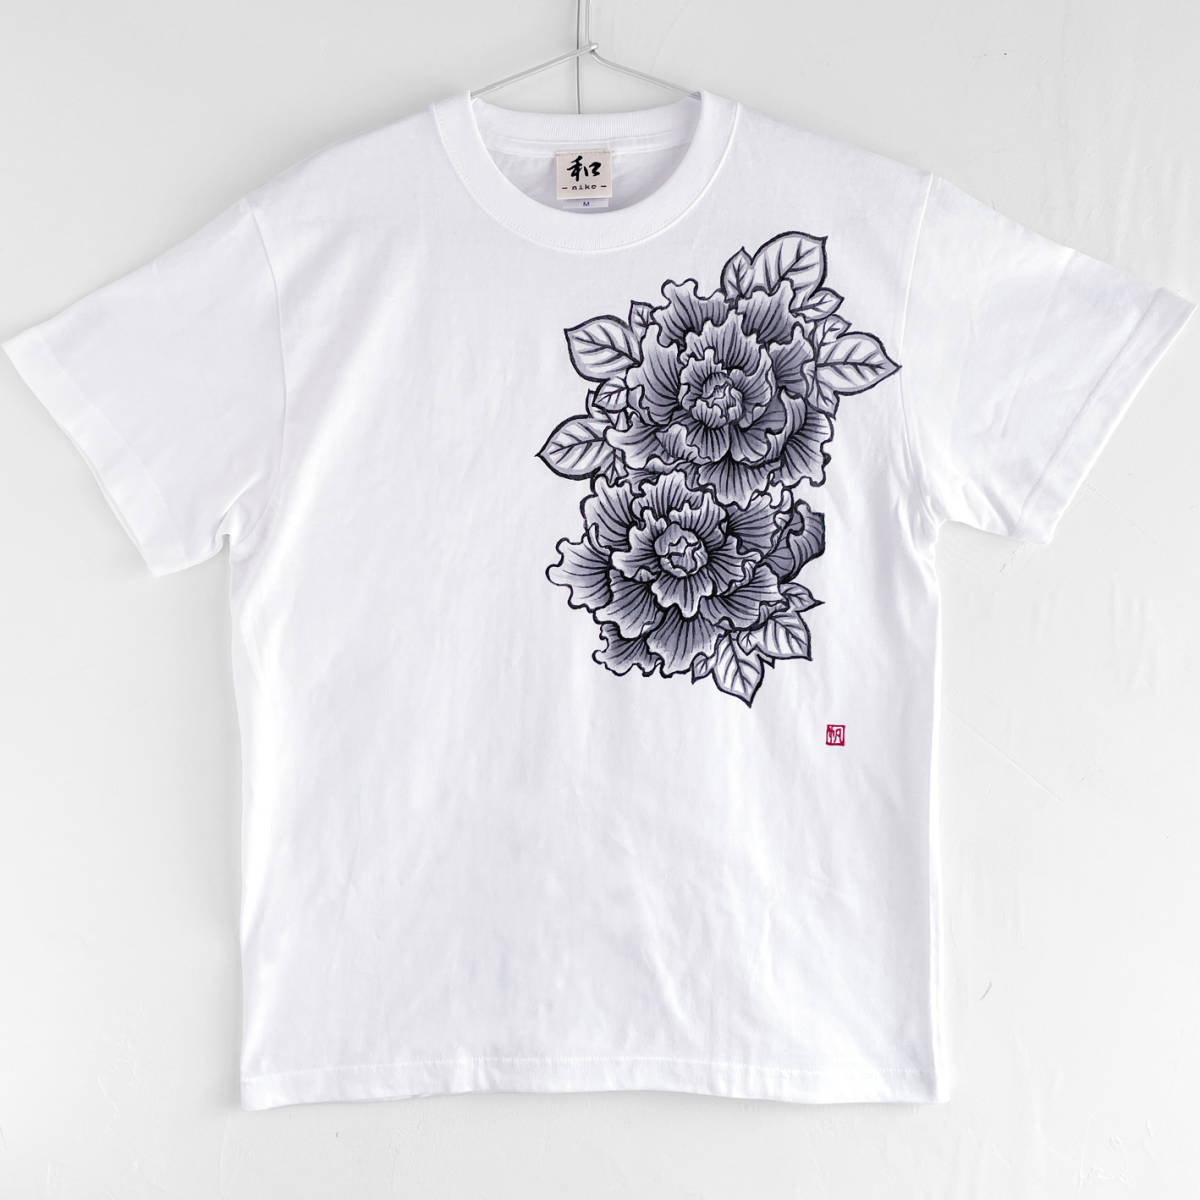 Мужская футболка, размер XL, футболка с рисунком пиона и ручной росписью, белый, футболка с цветочным узором пиона и ручной росписью, Японский узор, Размер XL и выше, Круглый вырез, с рисунком